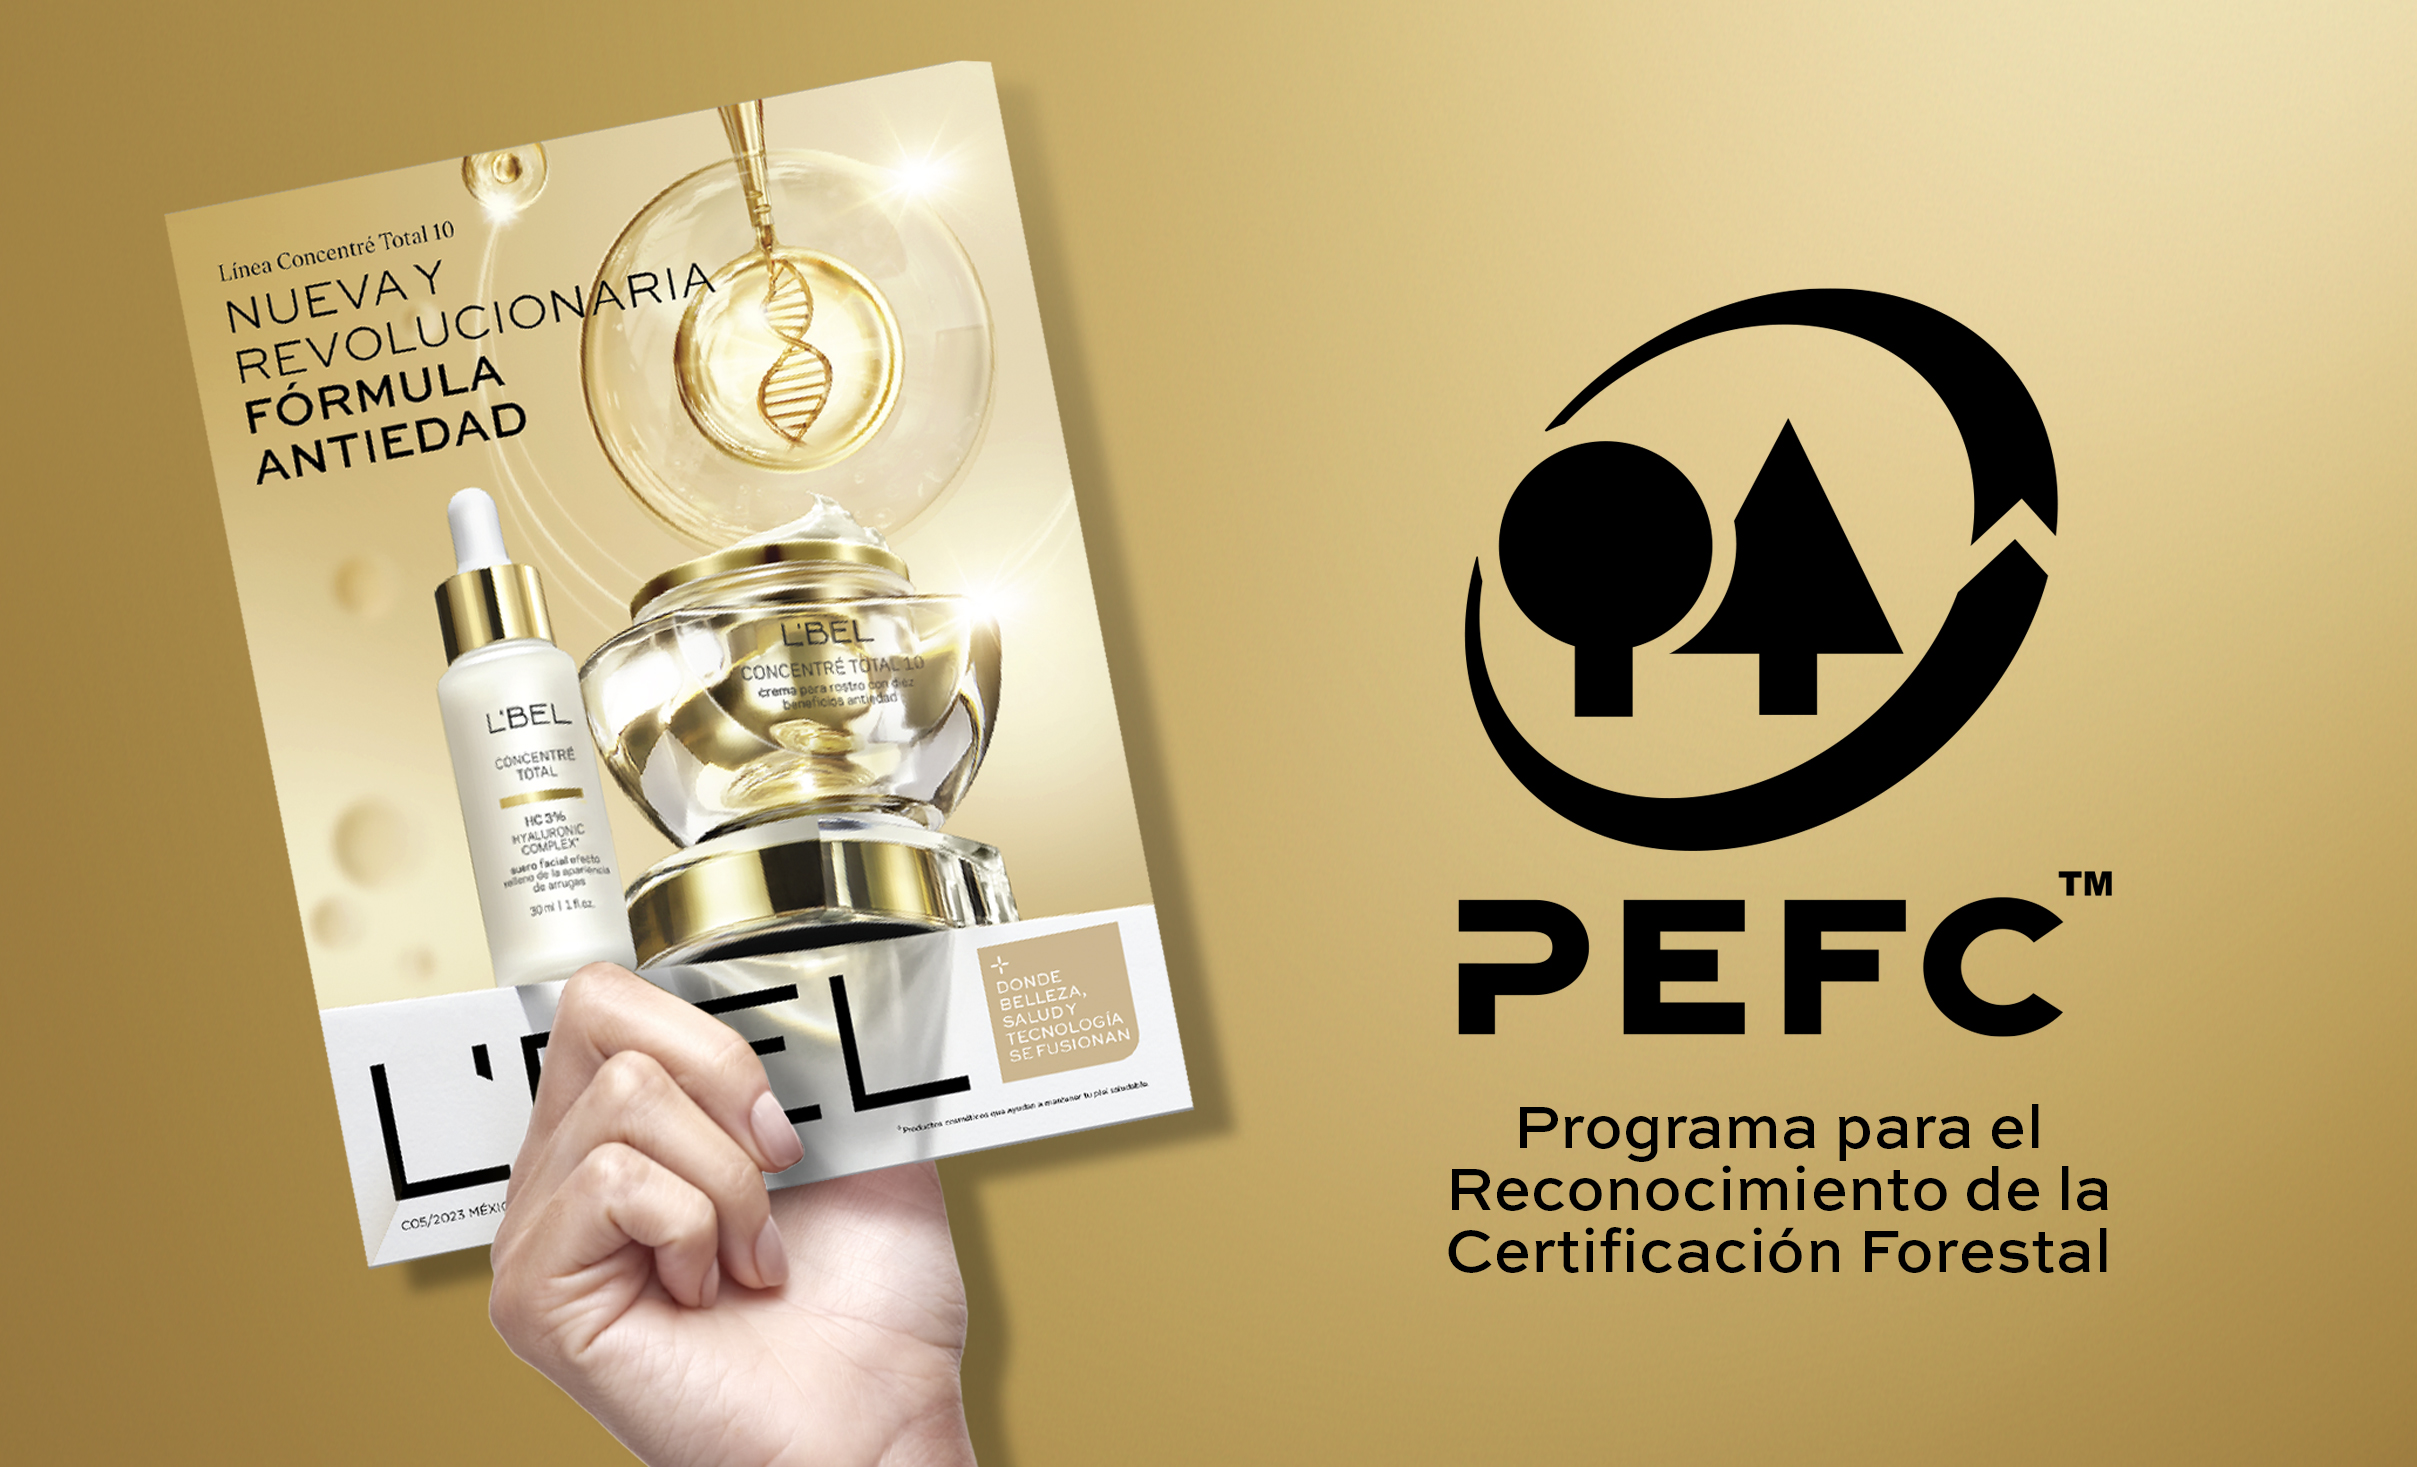 Catalogo L´bel certificado por PEFC